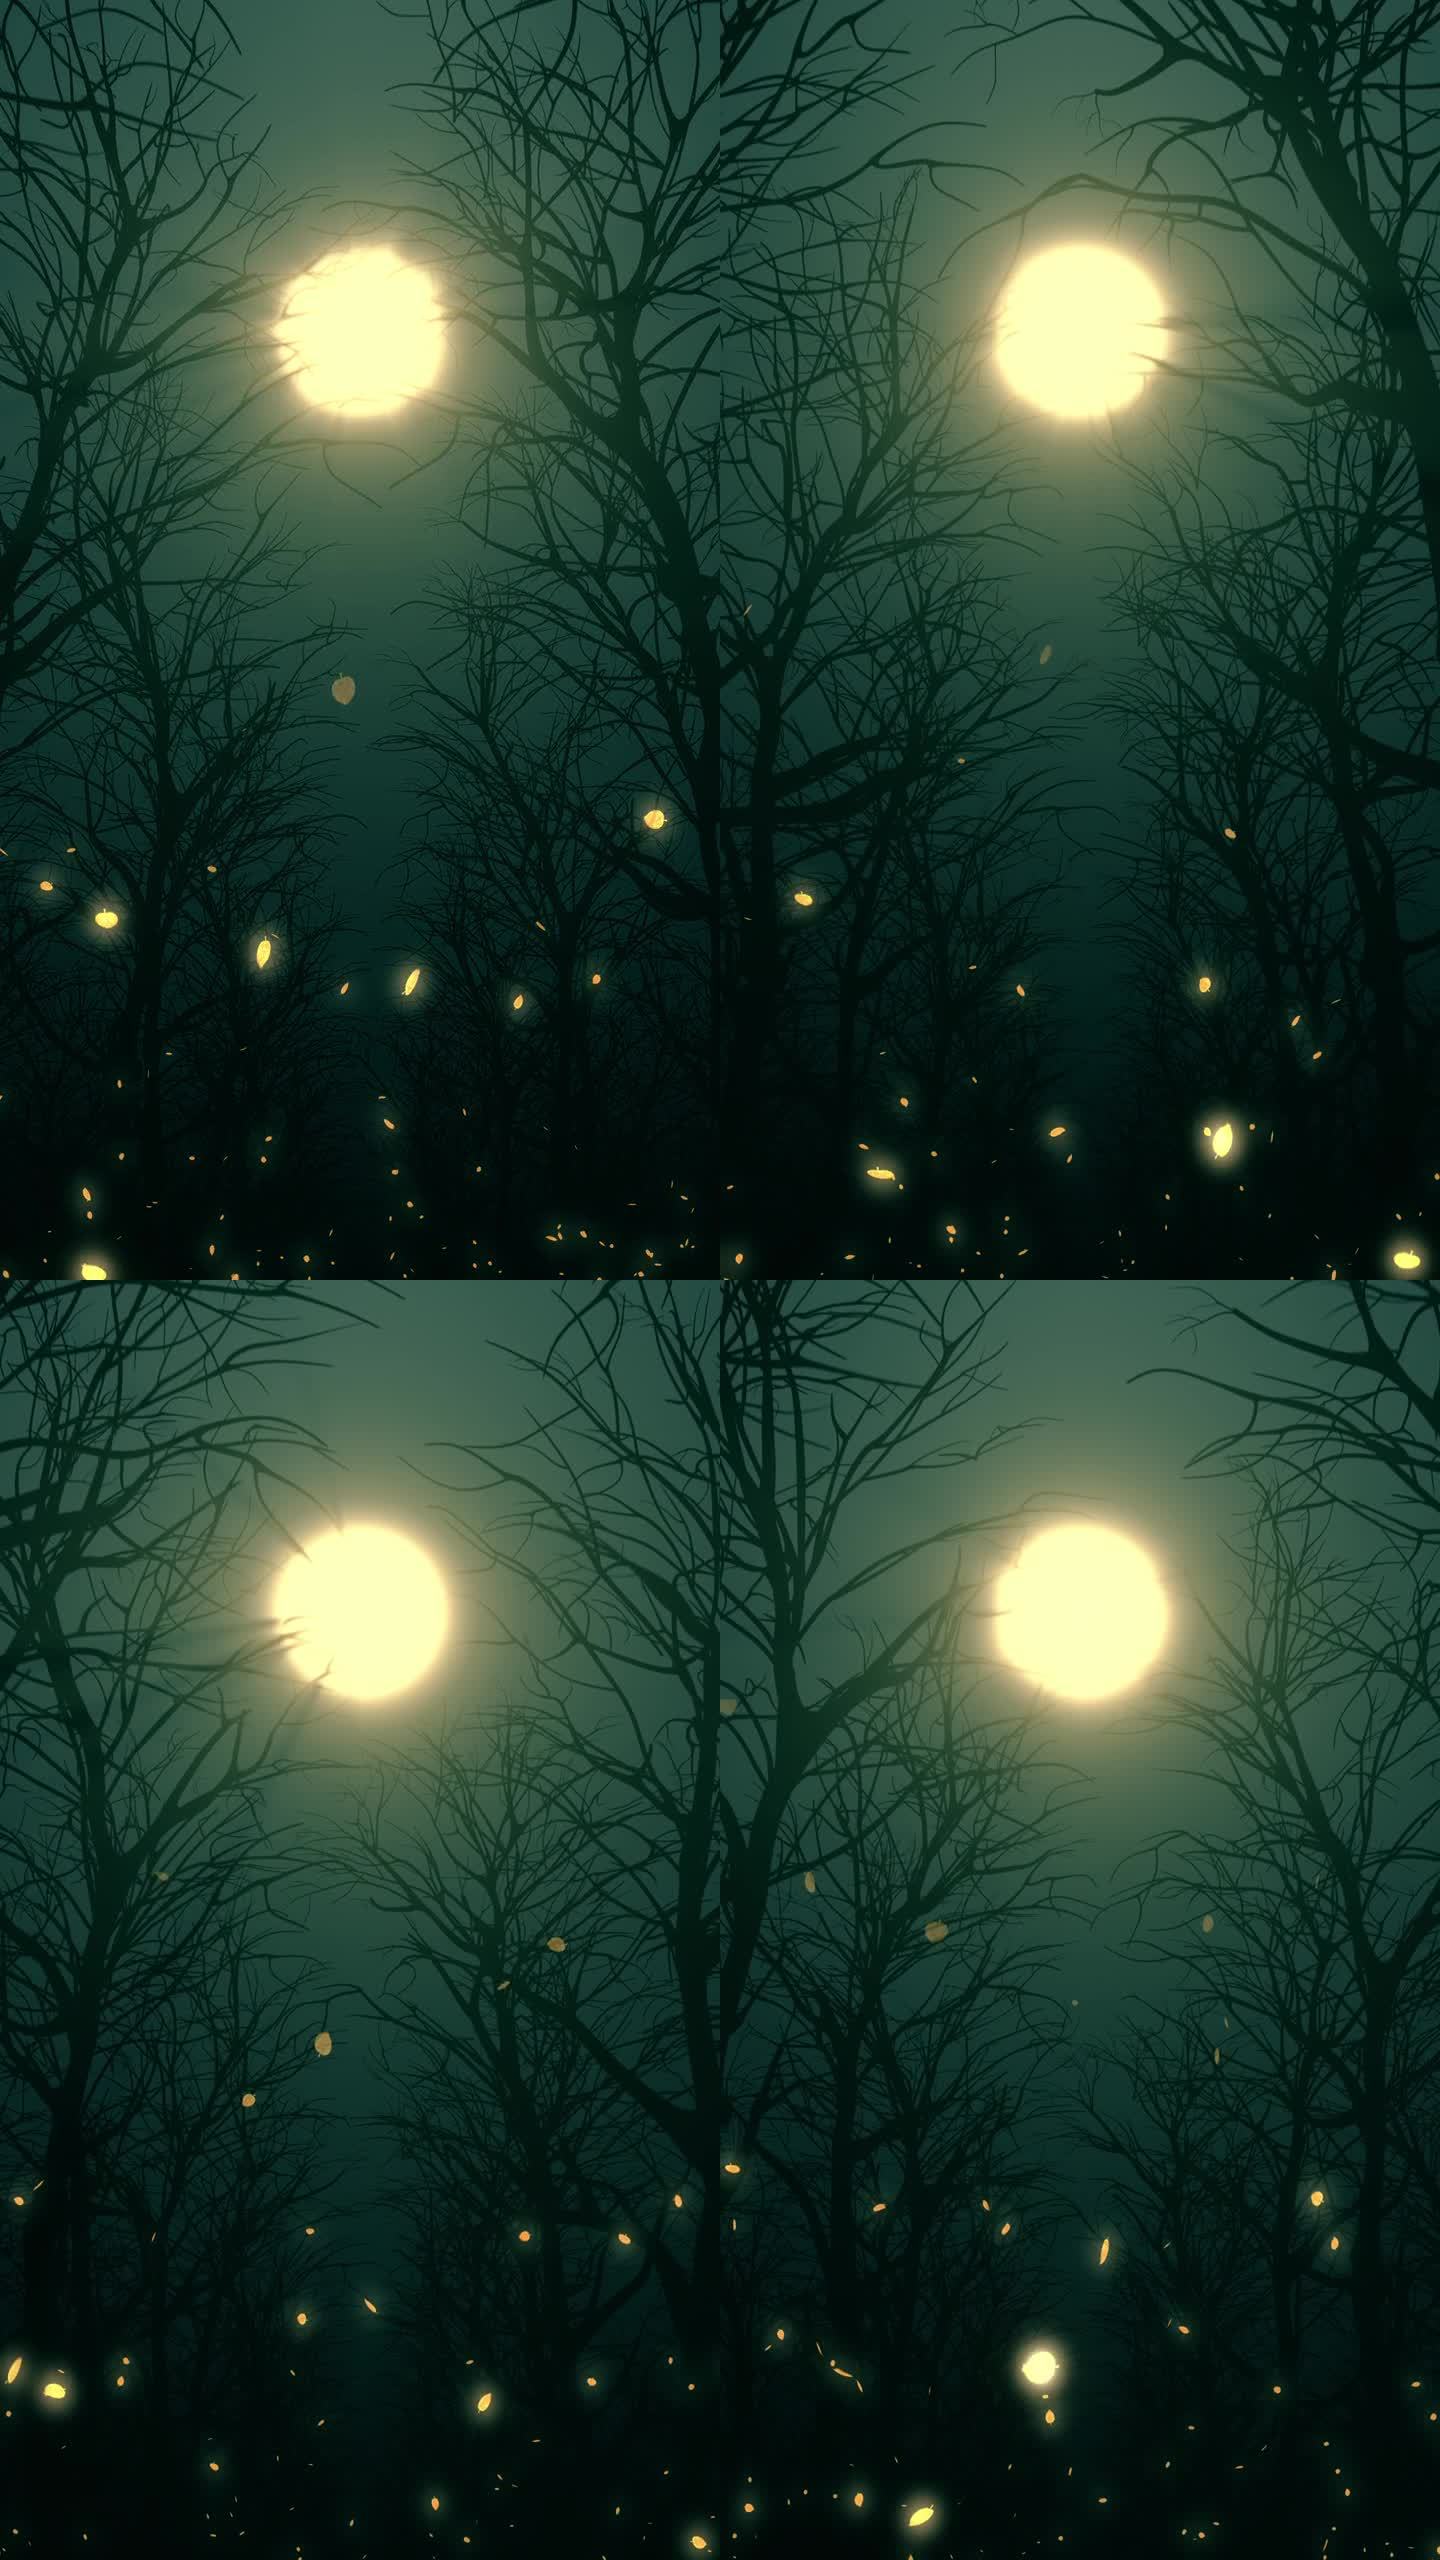 月光的垂直影像照亮了秋天森林里的落叶